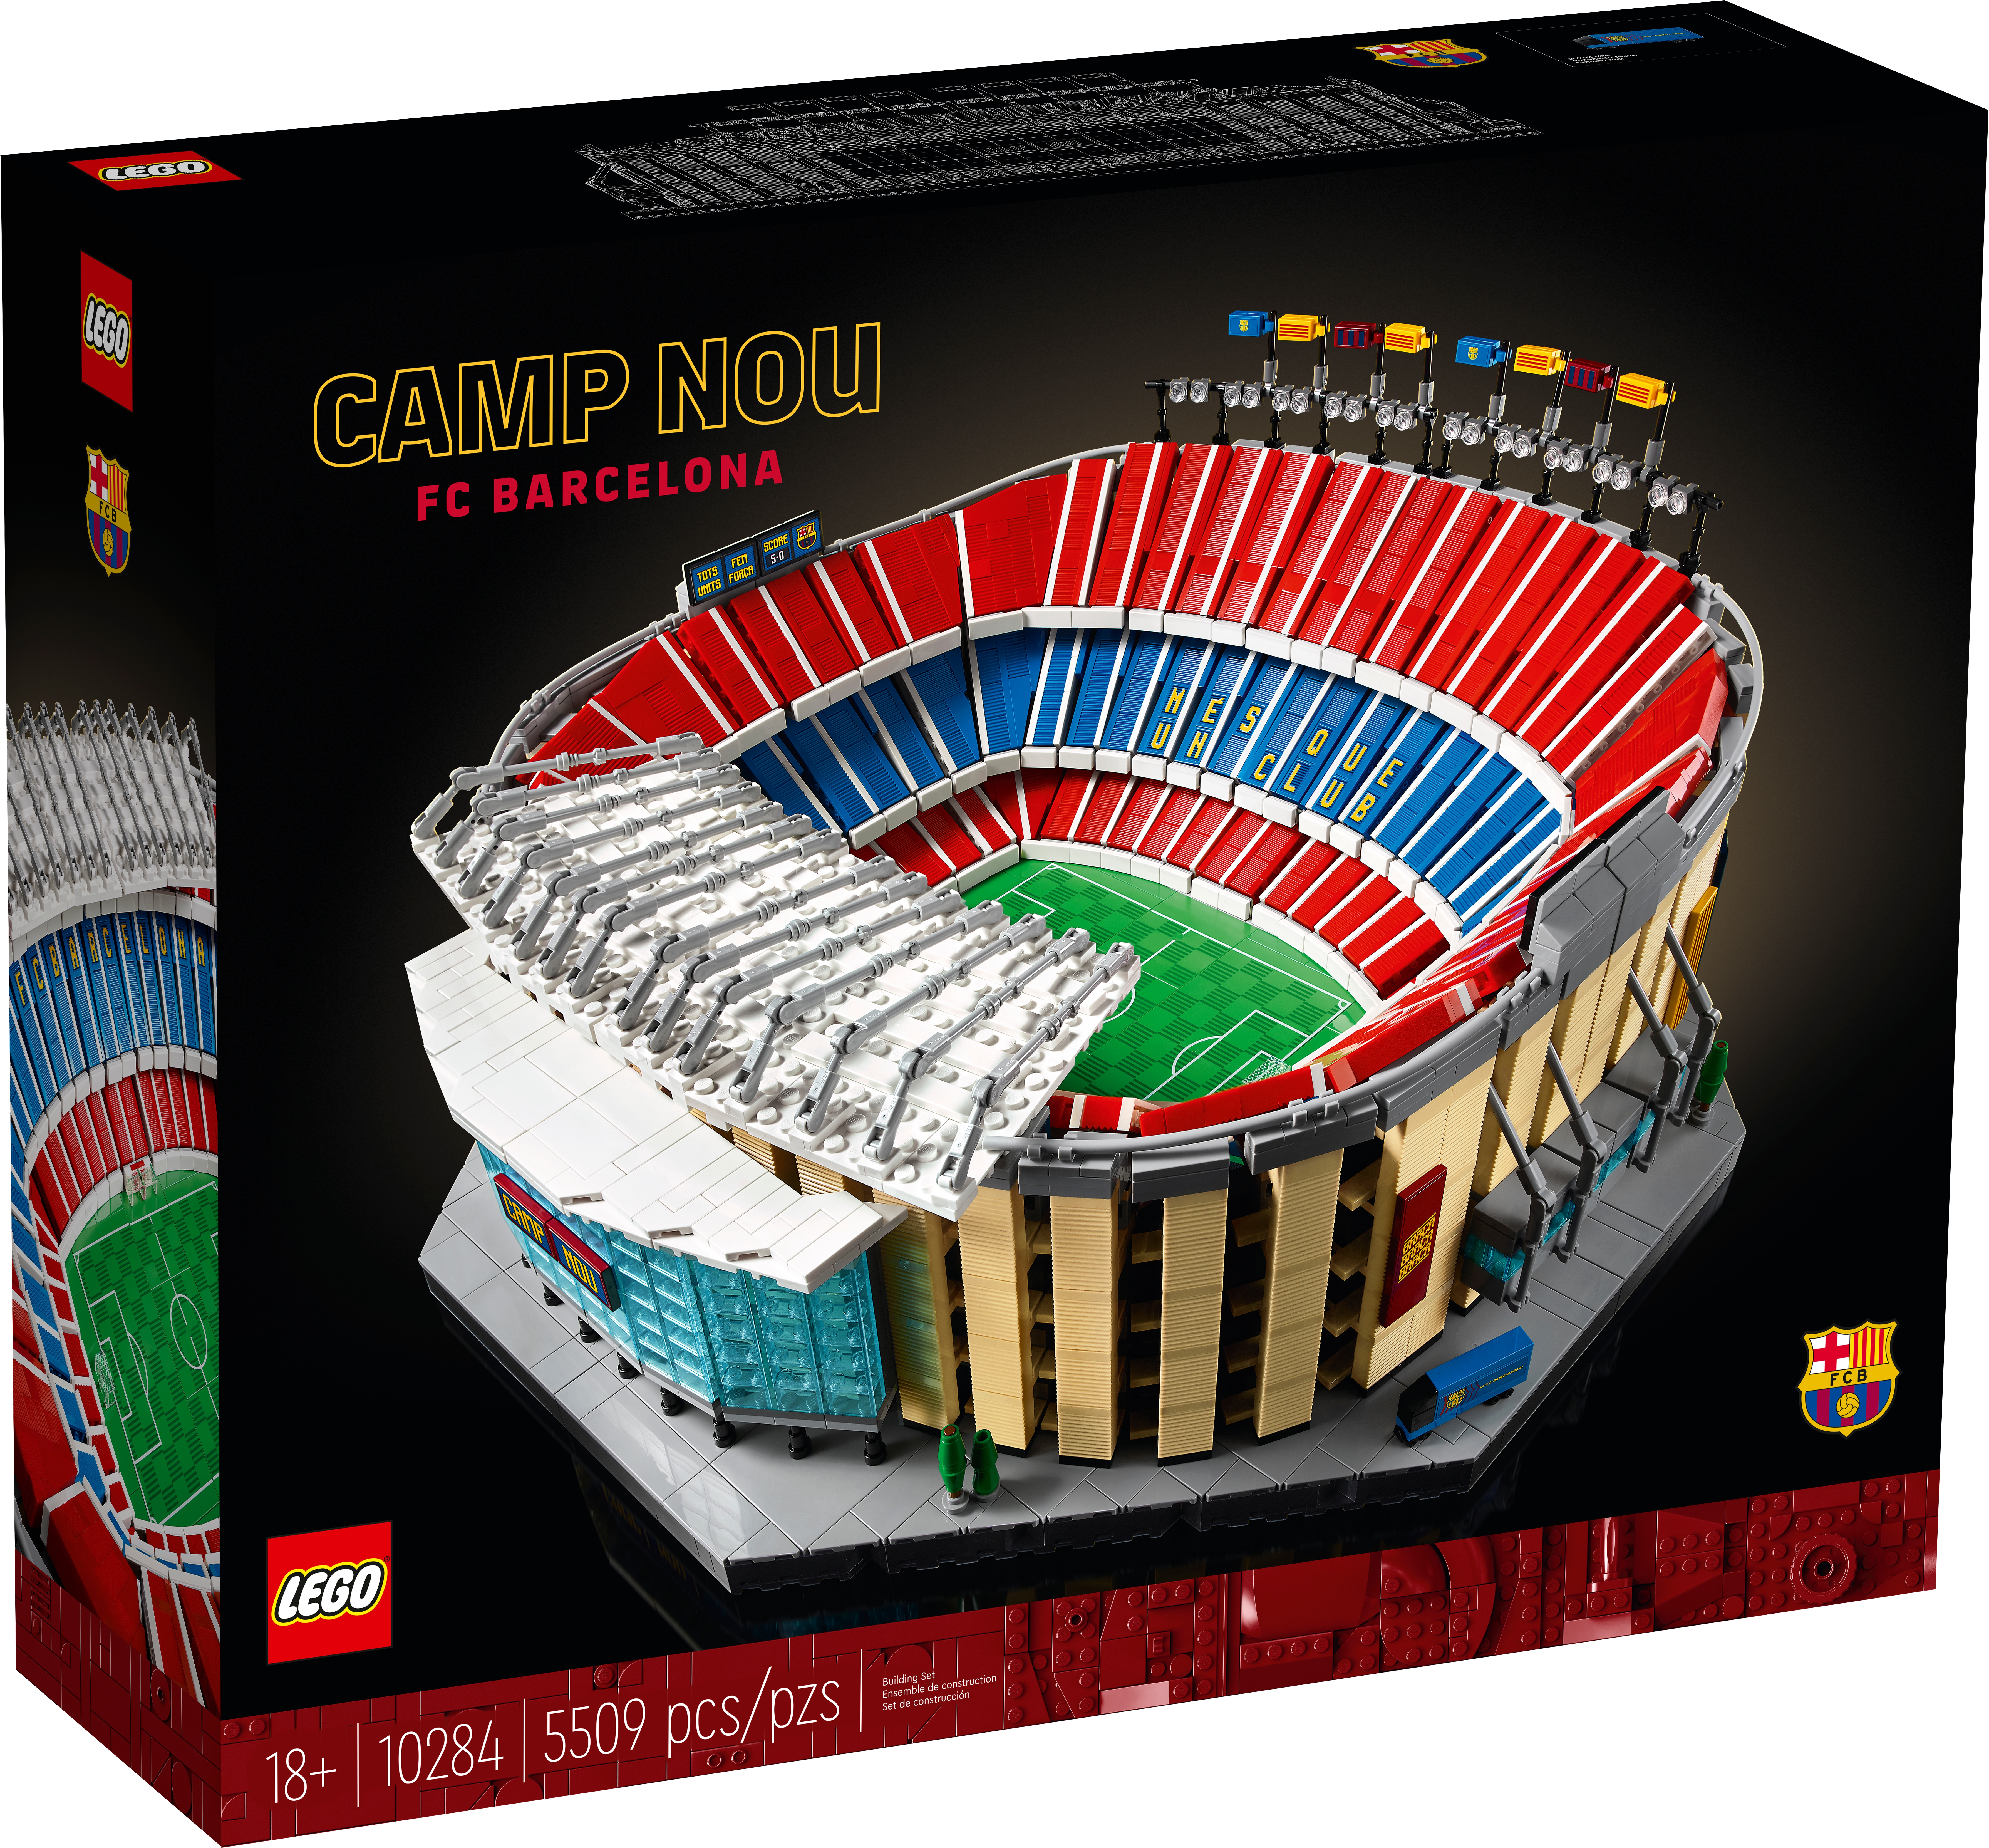 NEW LEGO BARCELONA FC FOOTBALL TORSO PART X5 MINIFIGURE CAMP NOU SOCCER PARTS 